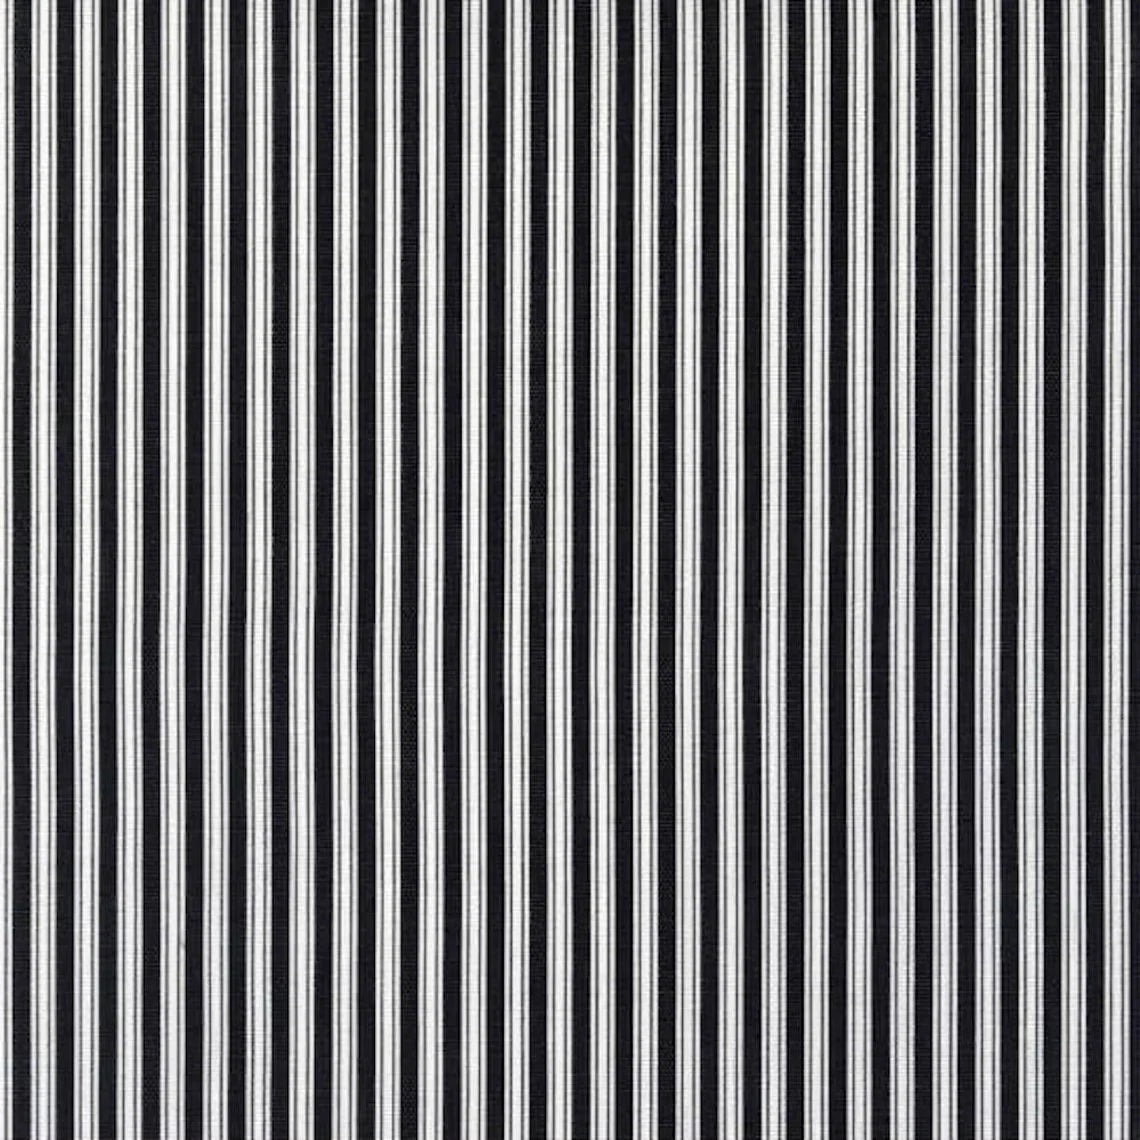 duvet cover in polo onyx black stripe on white